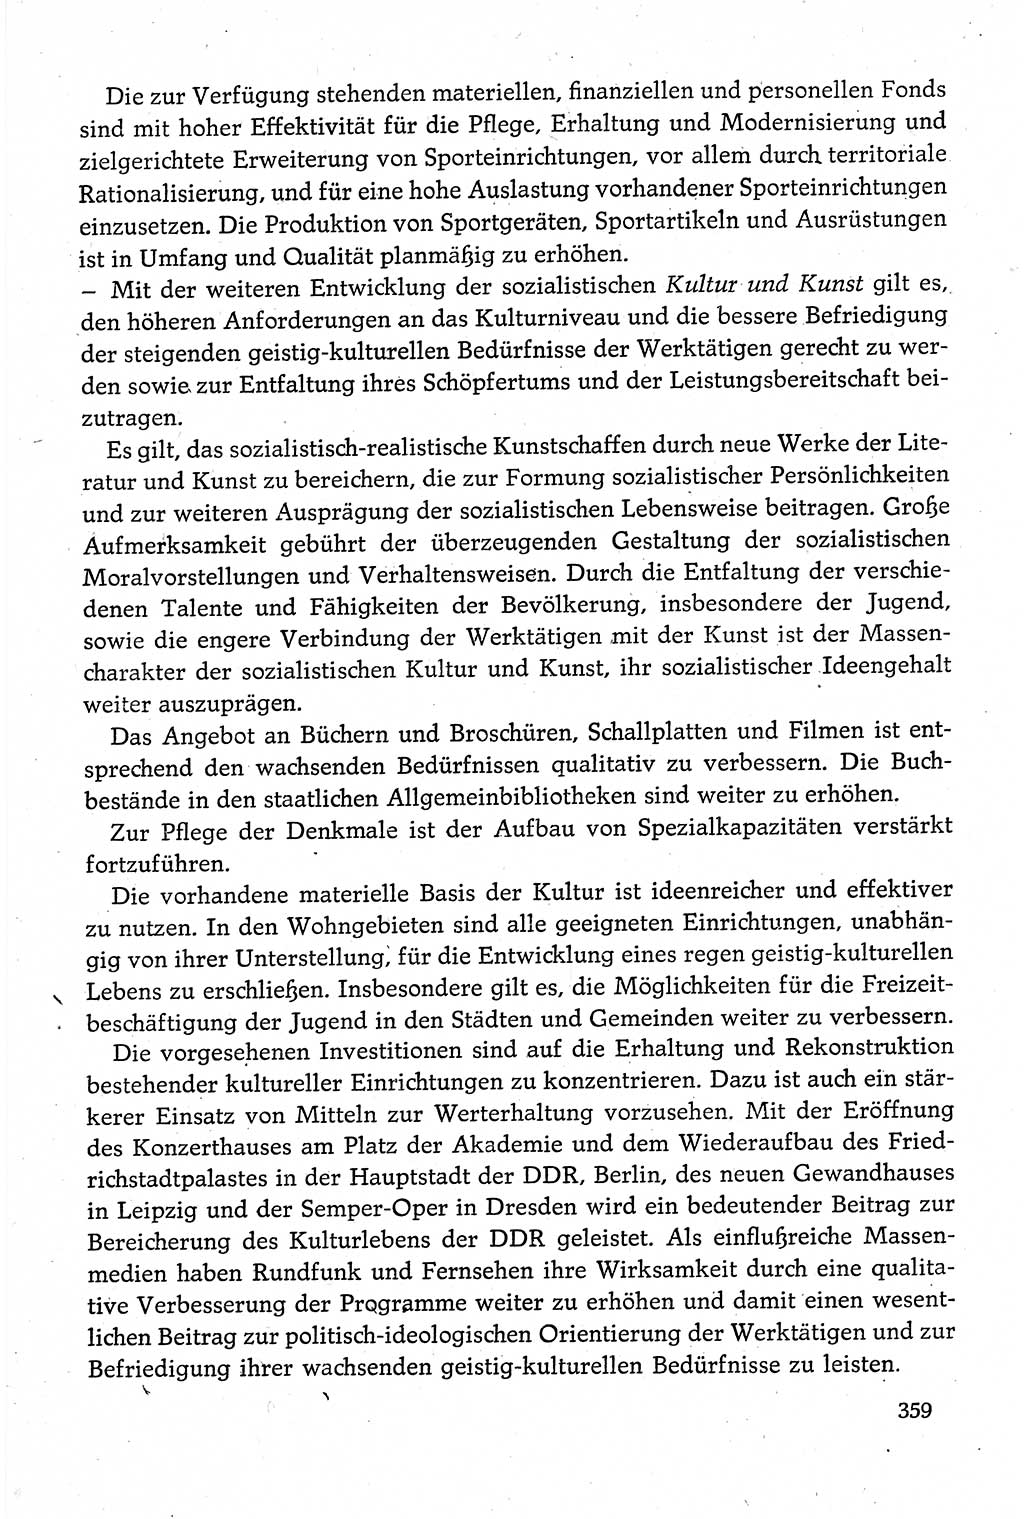 Dokumente der Sozialistischen Einheitspartei Deutschlands (SED) [Deutsche Demokratische Republik (DDR)] 1980-1981, Seite 359 (Dok. SED DDR 1980-1981, S. 359)